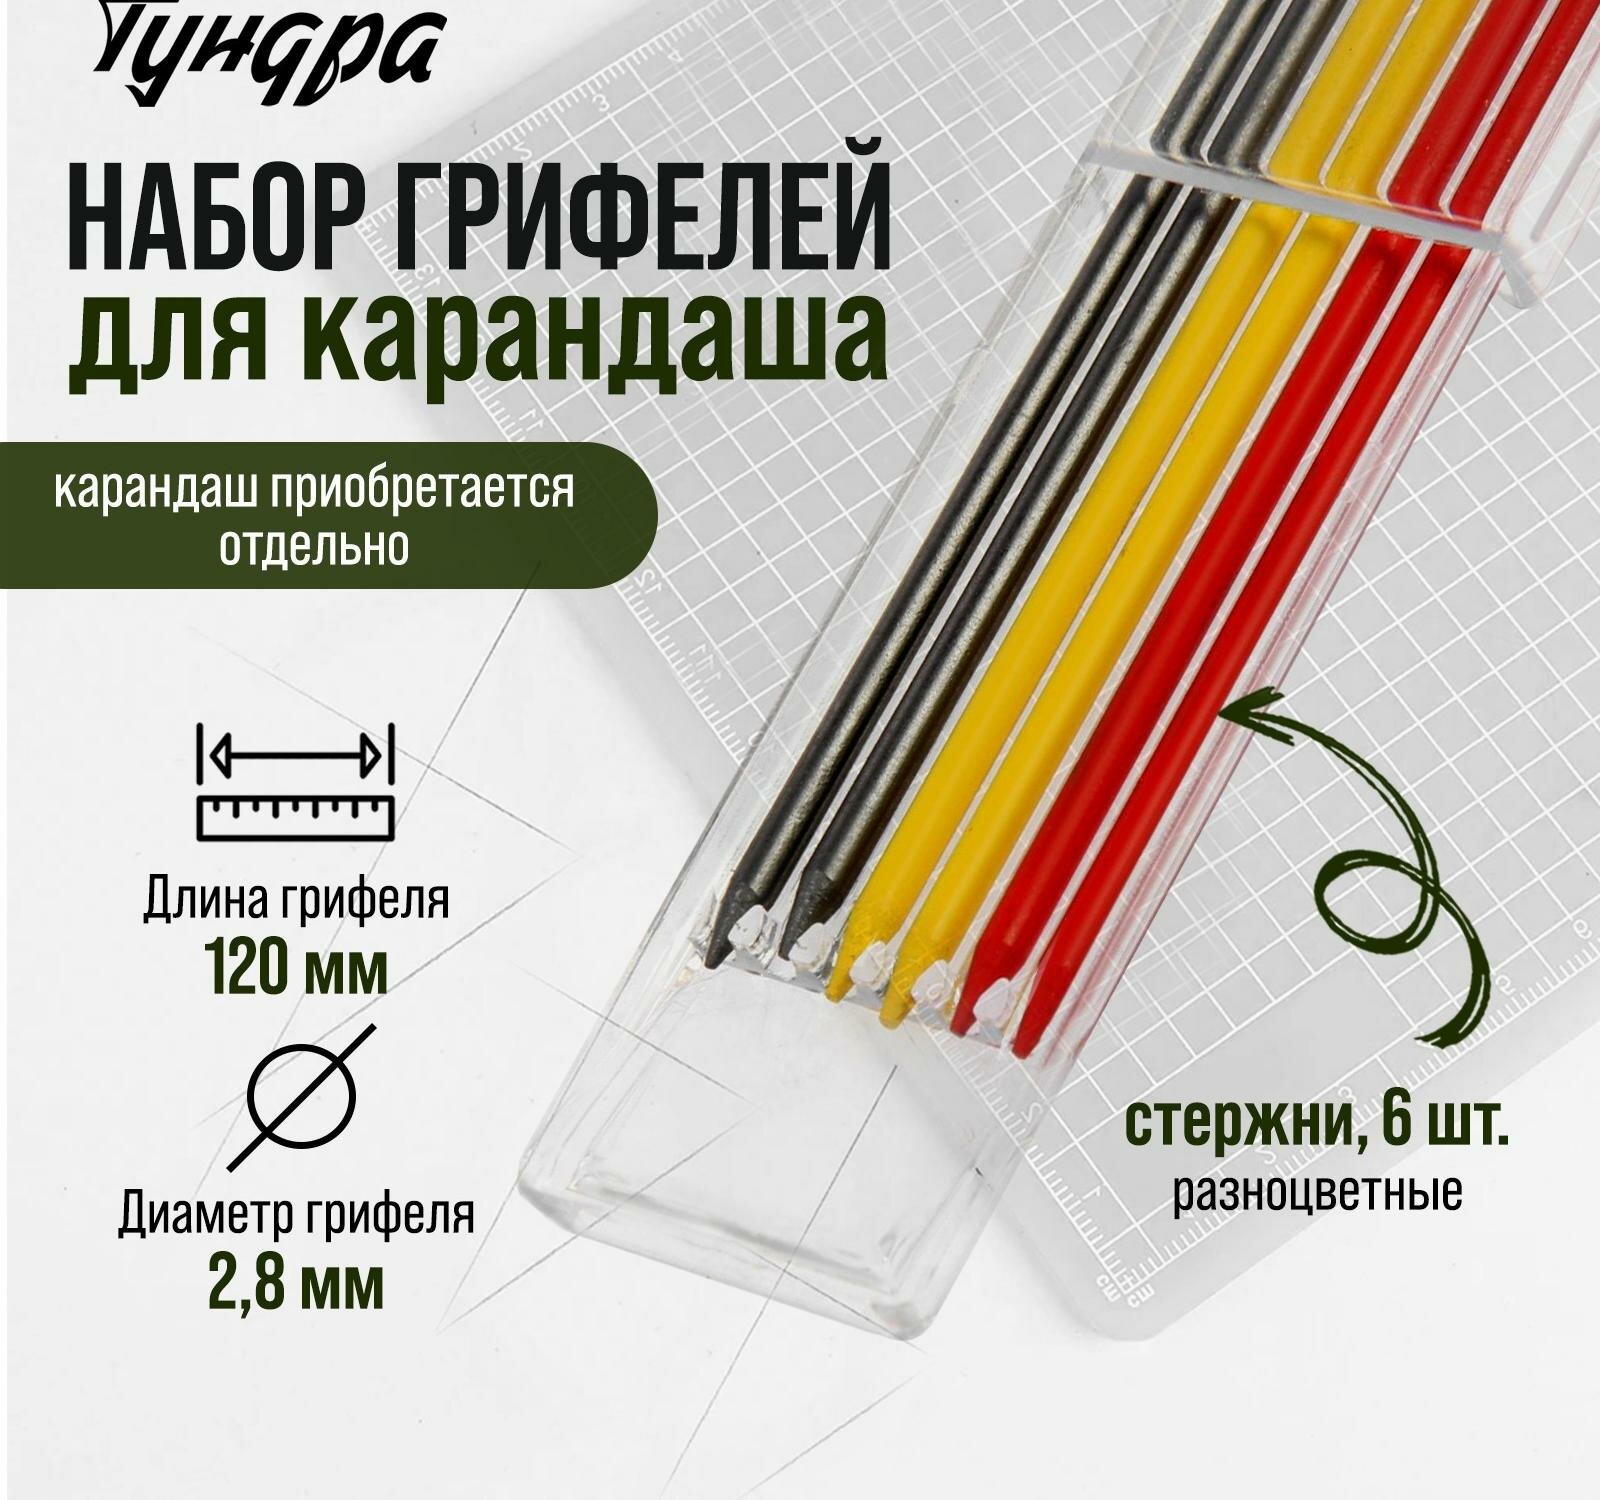 Набор грифелей для карандаша тундра, цветные (черные, красные, желтые), 120 мм, 6 штук